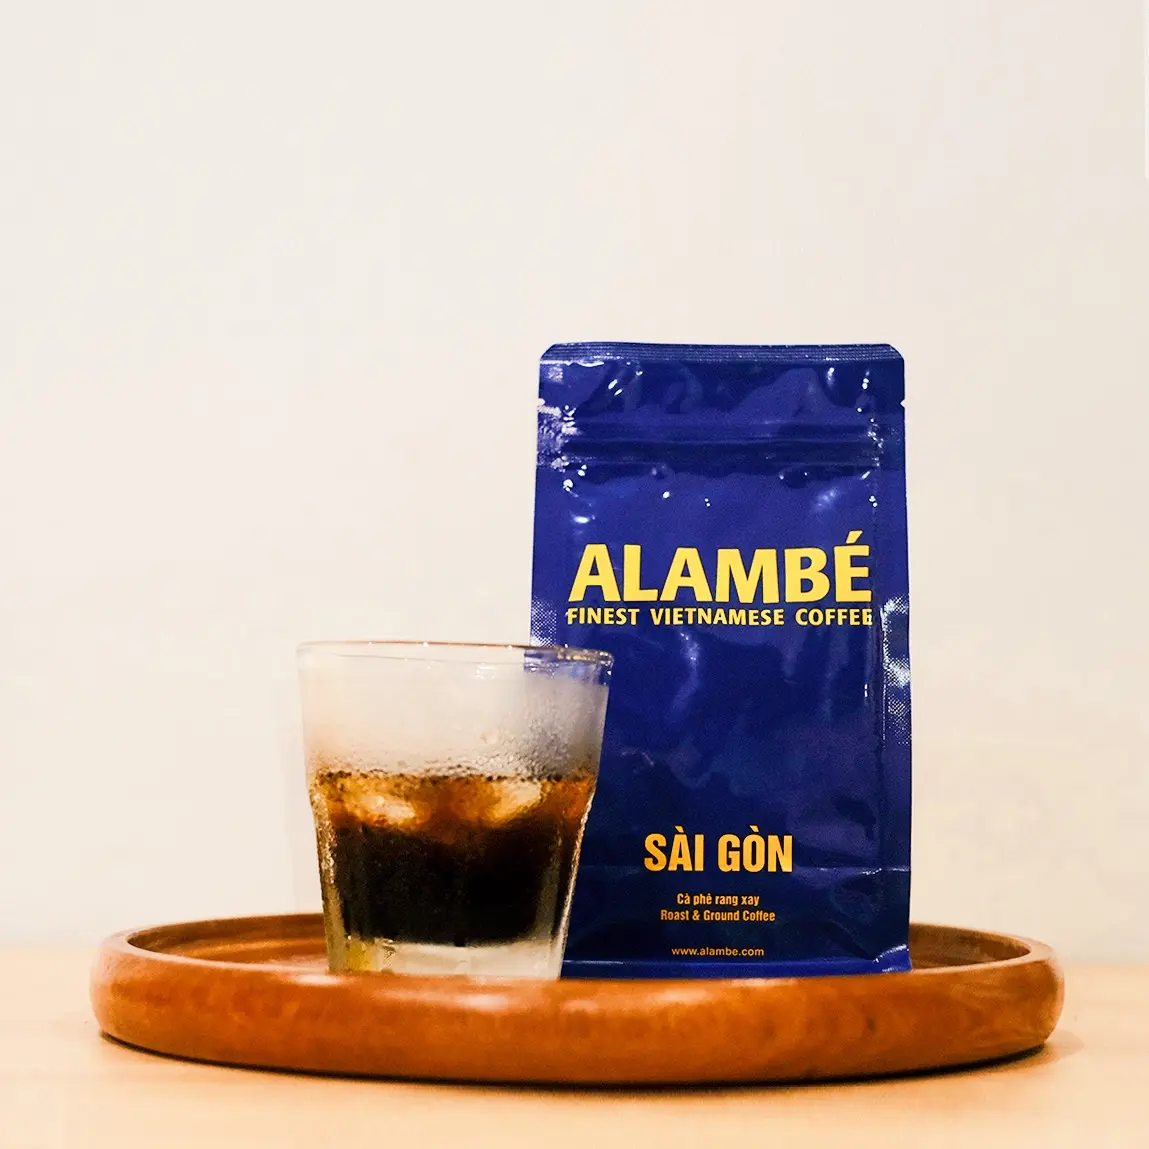 Prezzo a buon mercato Alambe Sai Gon chicchi interi caffè 0.5kg bevanda del mattino tostato francese Arabica pura & Robusta per caffè vietnamita Ph